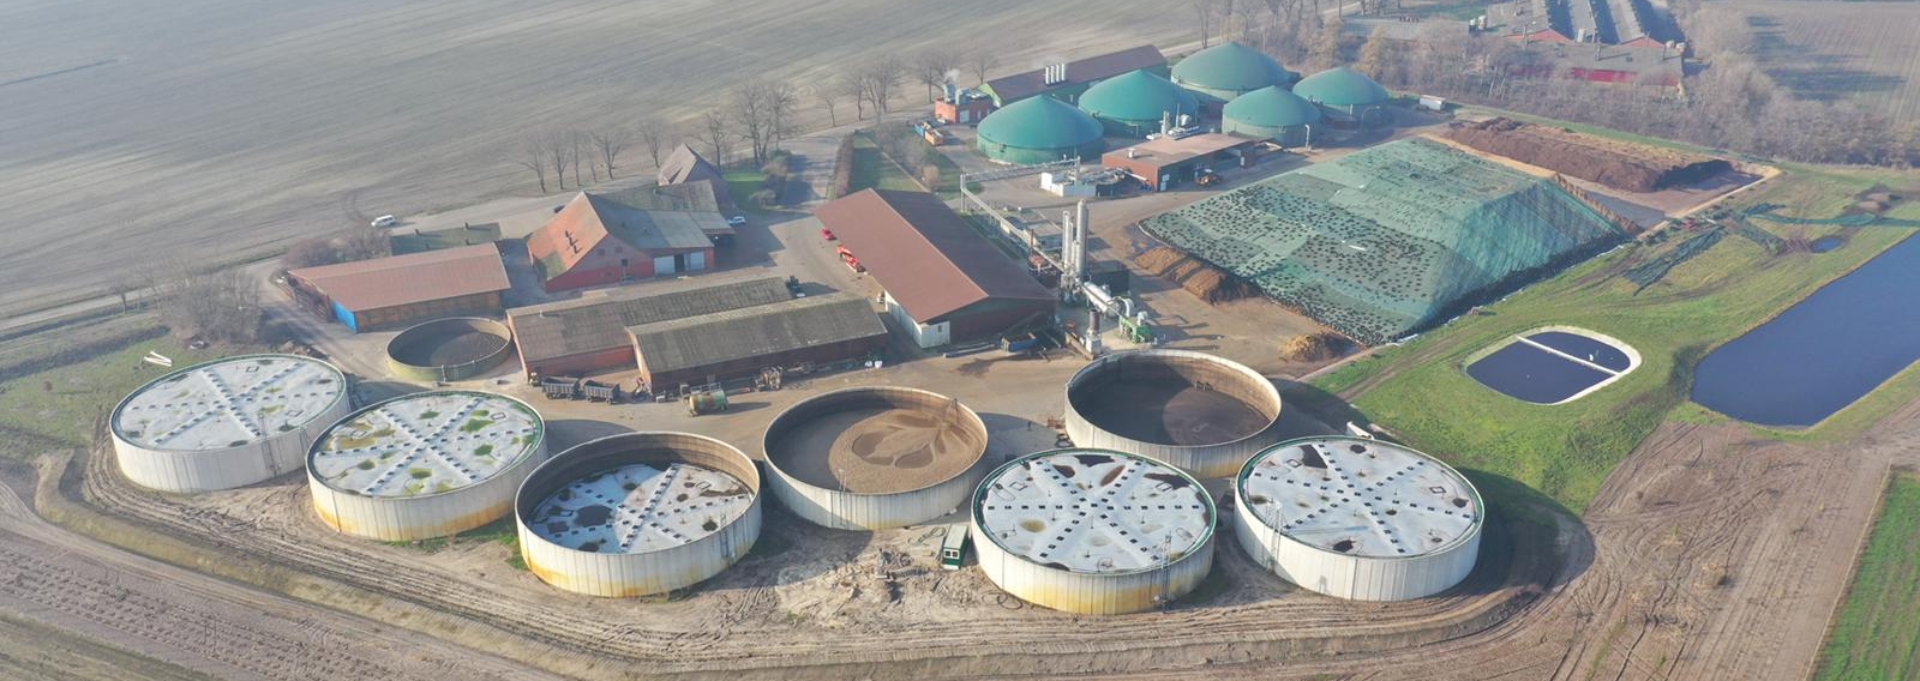 Luchtfoto van vijf biogas drijfkleden